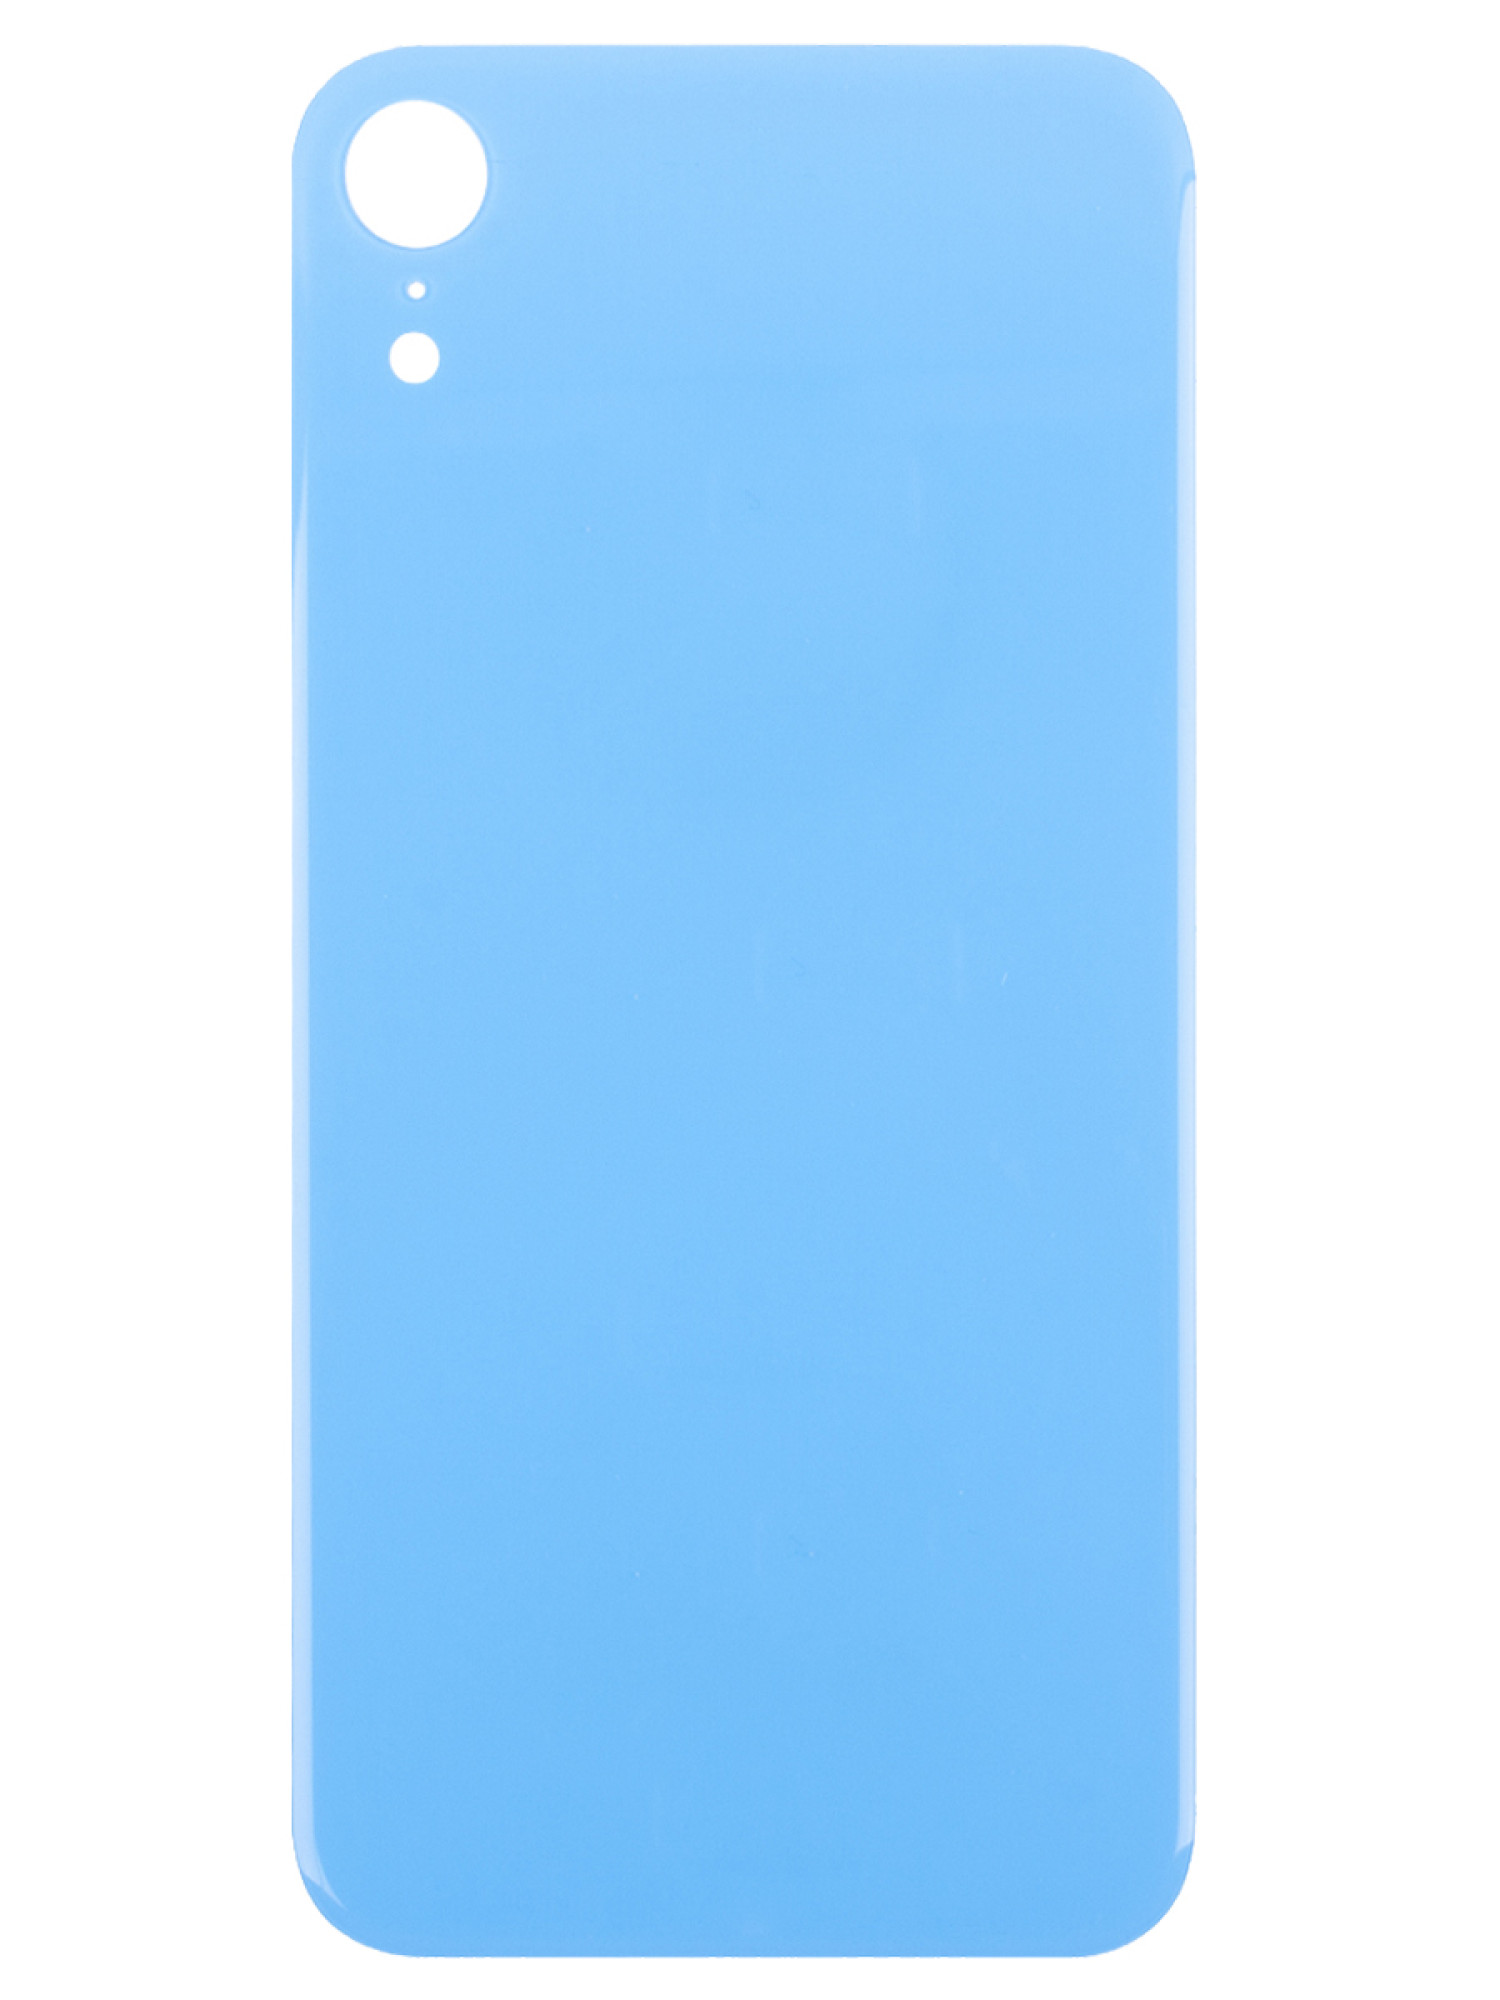 Задняя крышка для Apple iPhone XR (широкое отверстие под камеру), голубая - фото